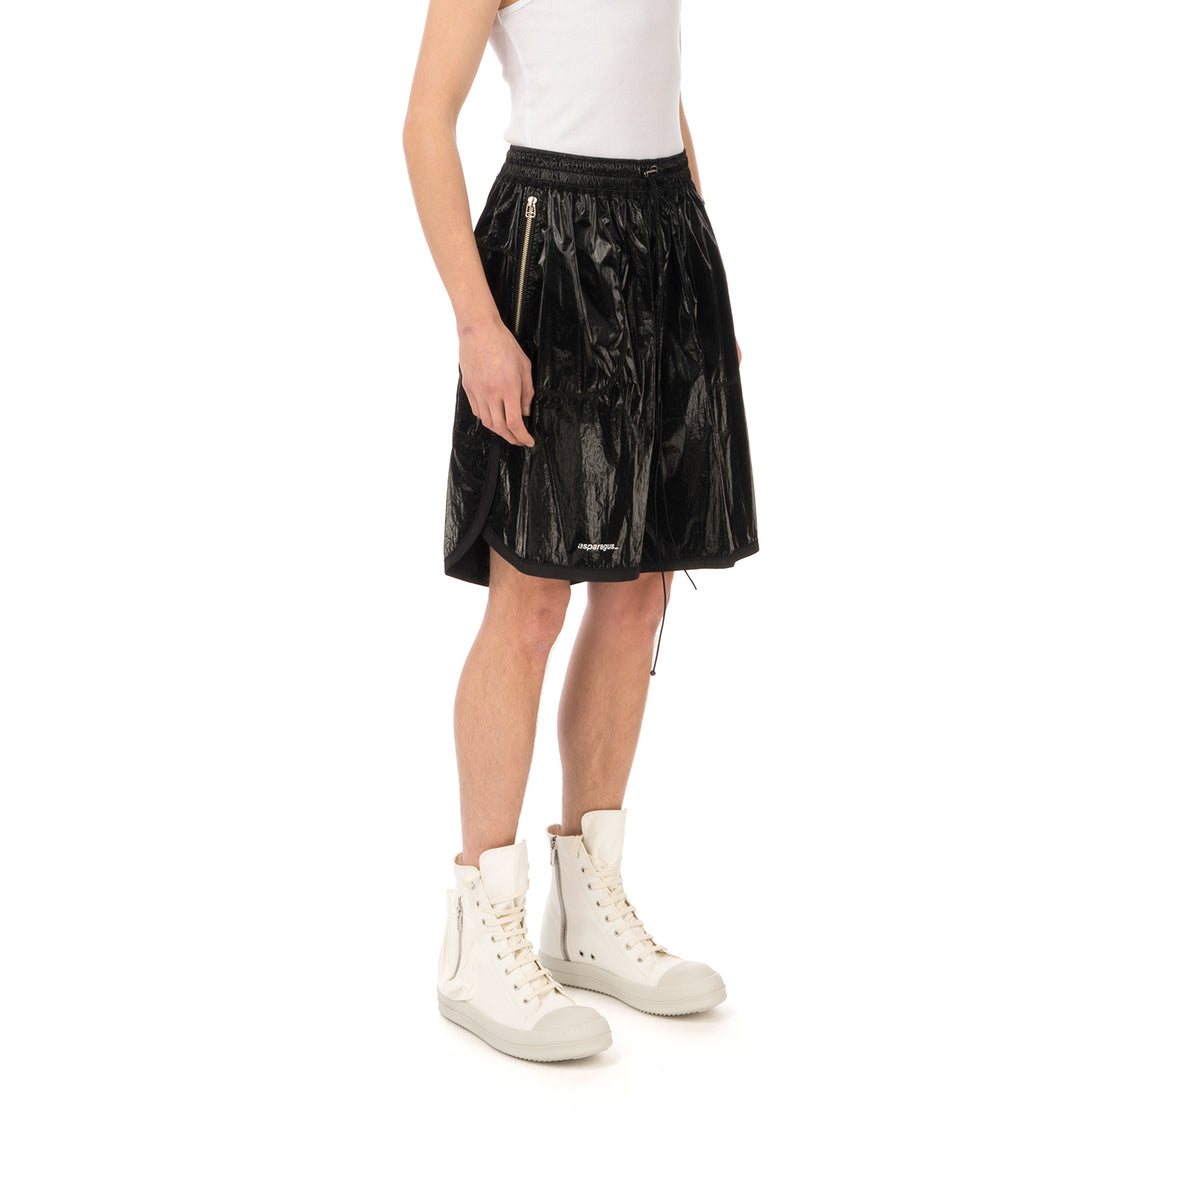 asparagus_ | Inside Out Foil Shorts Black - Concrete